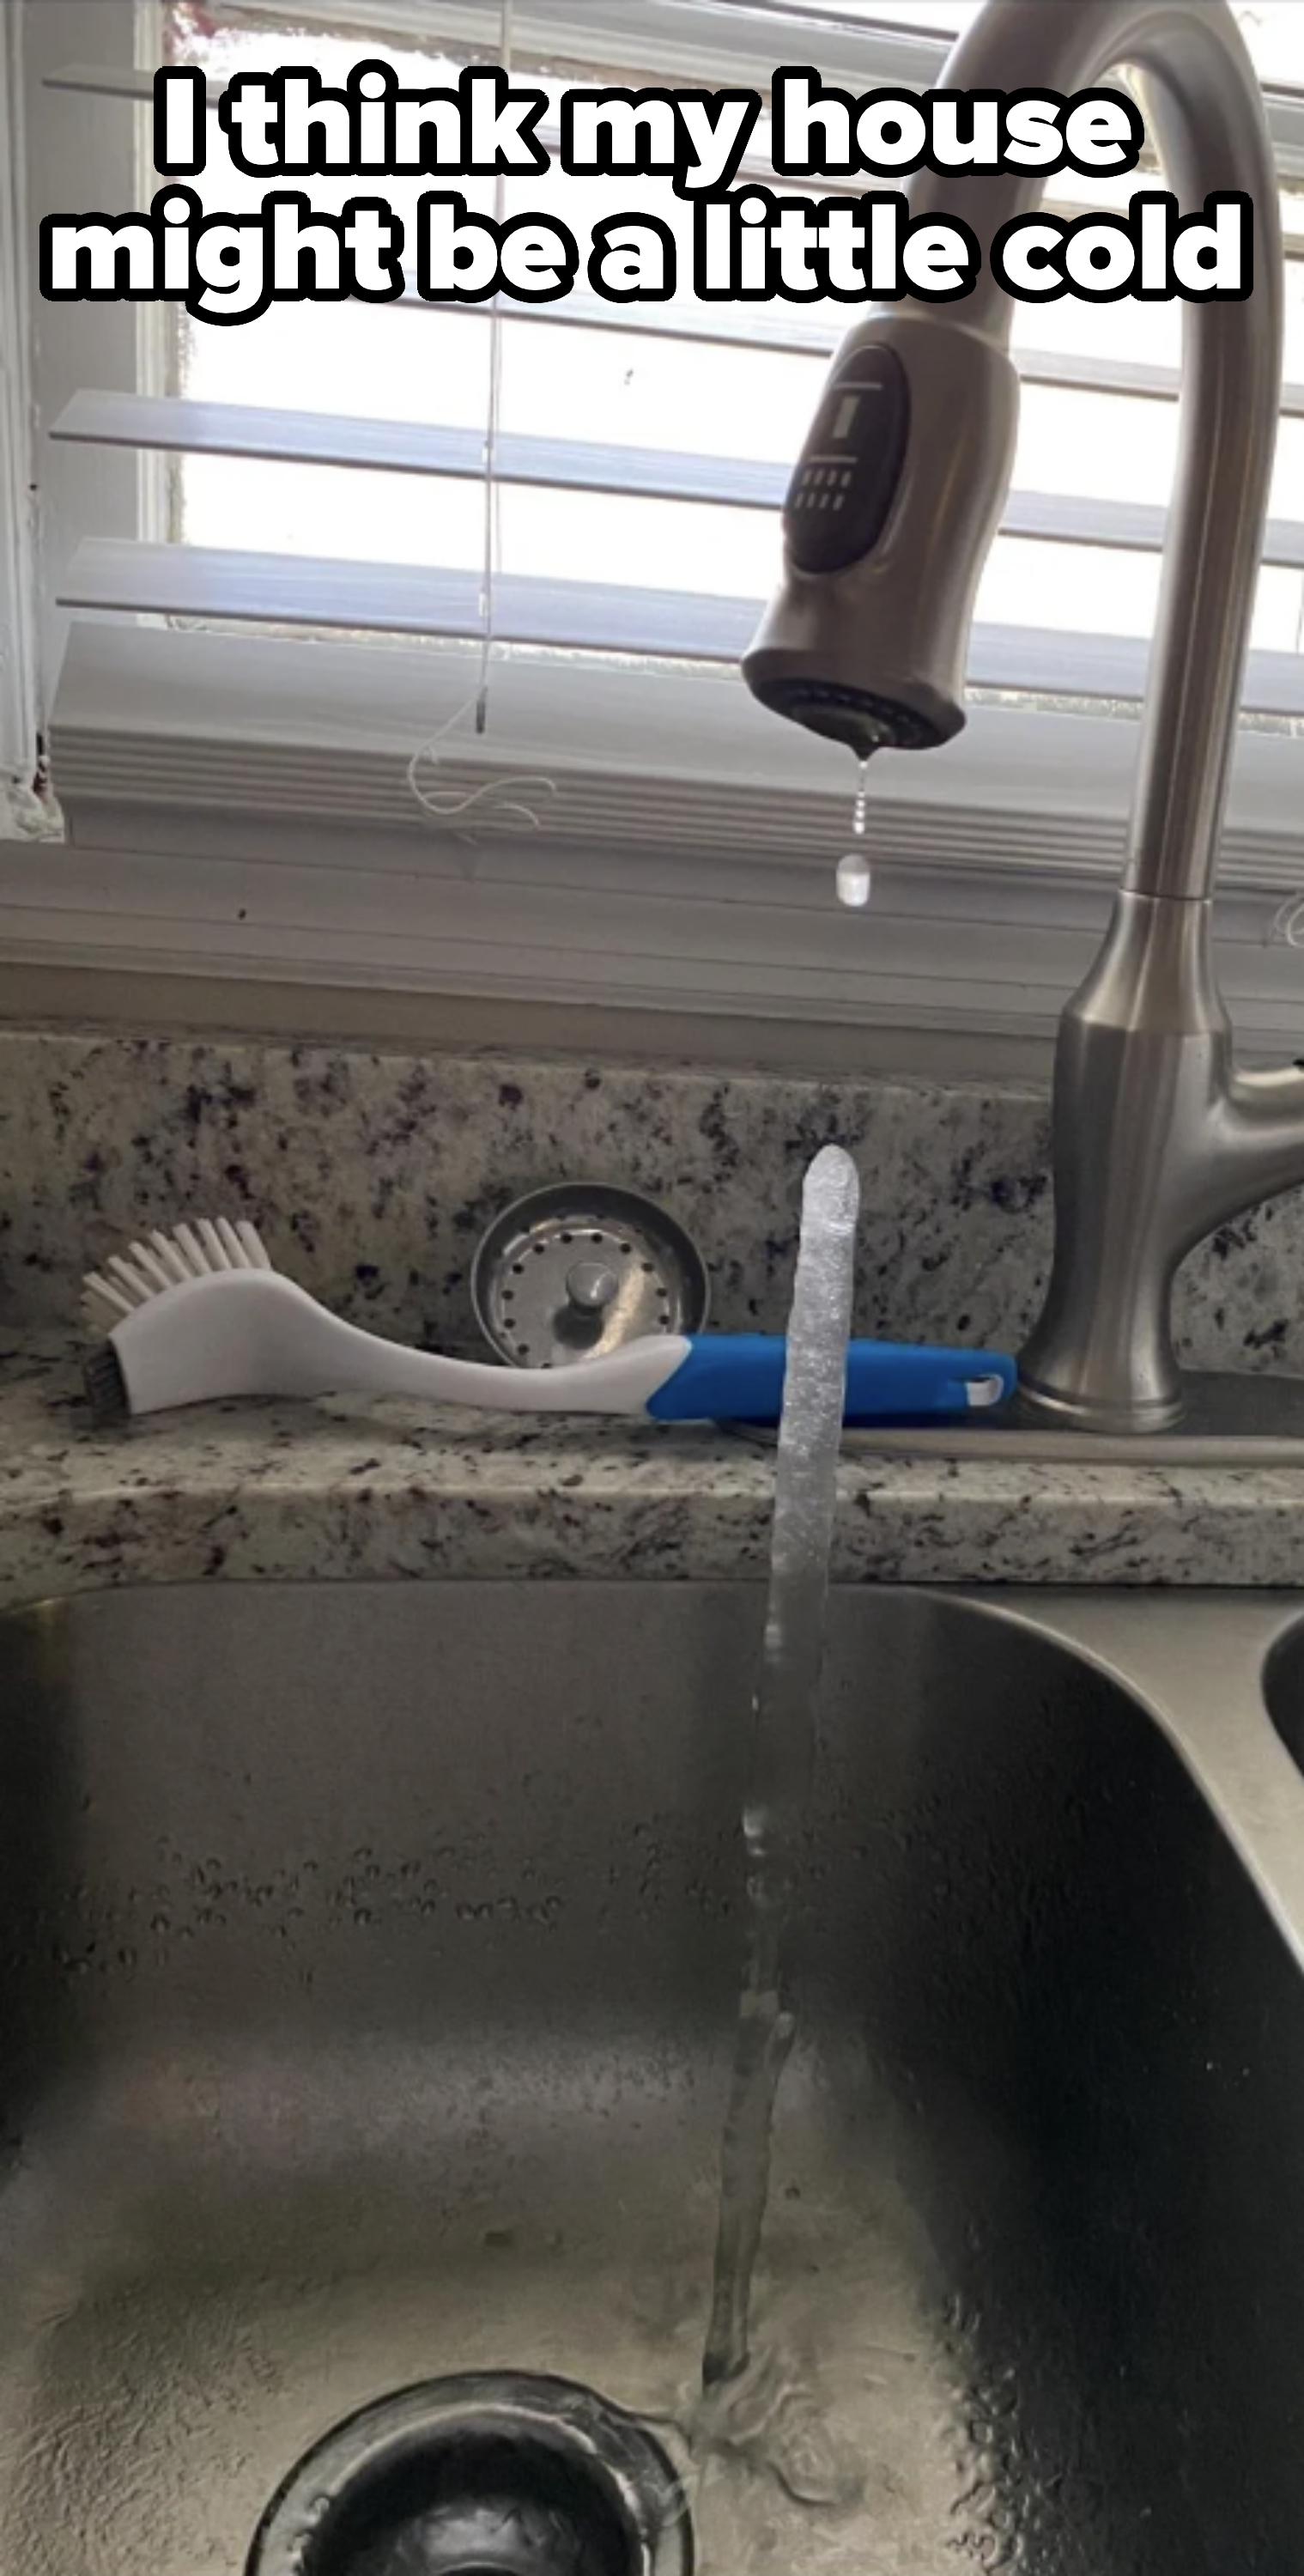 frozen water in a sink